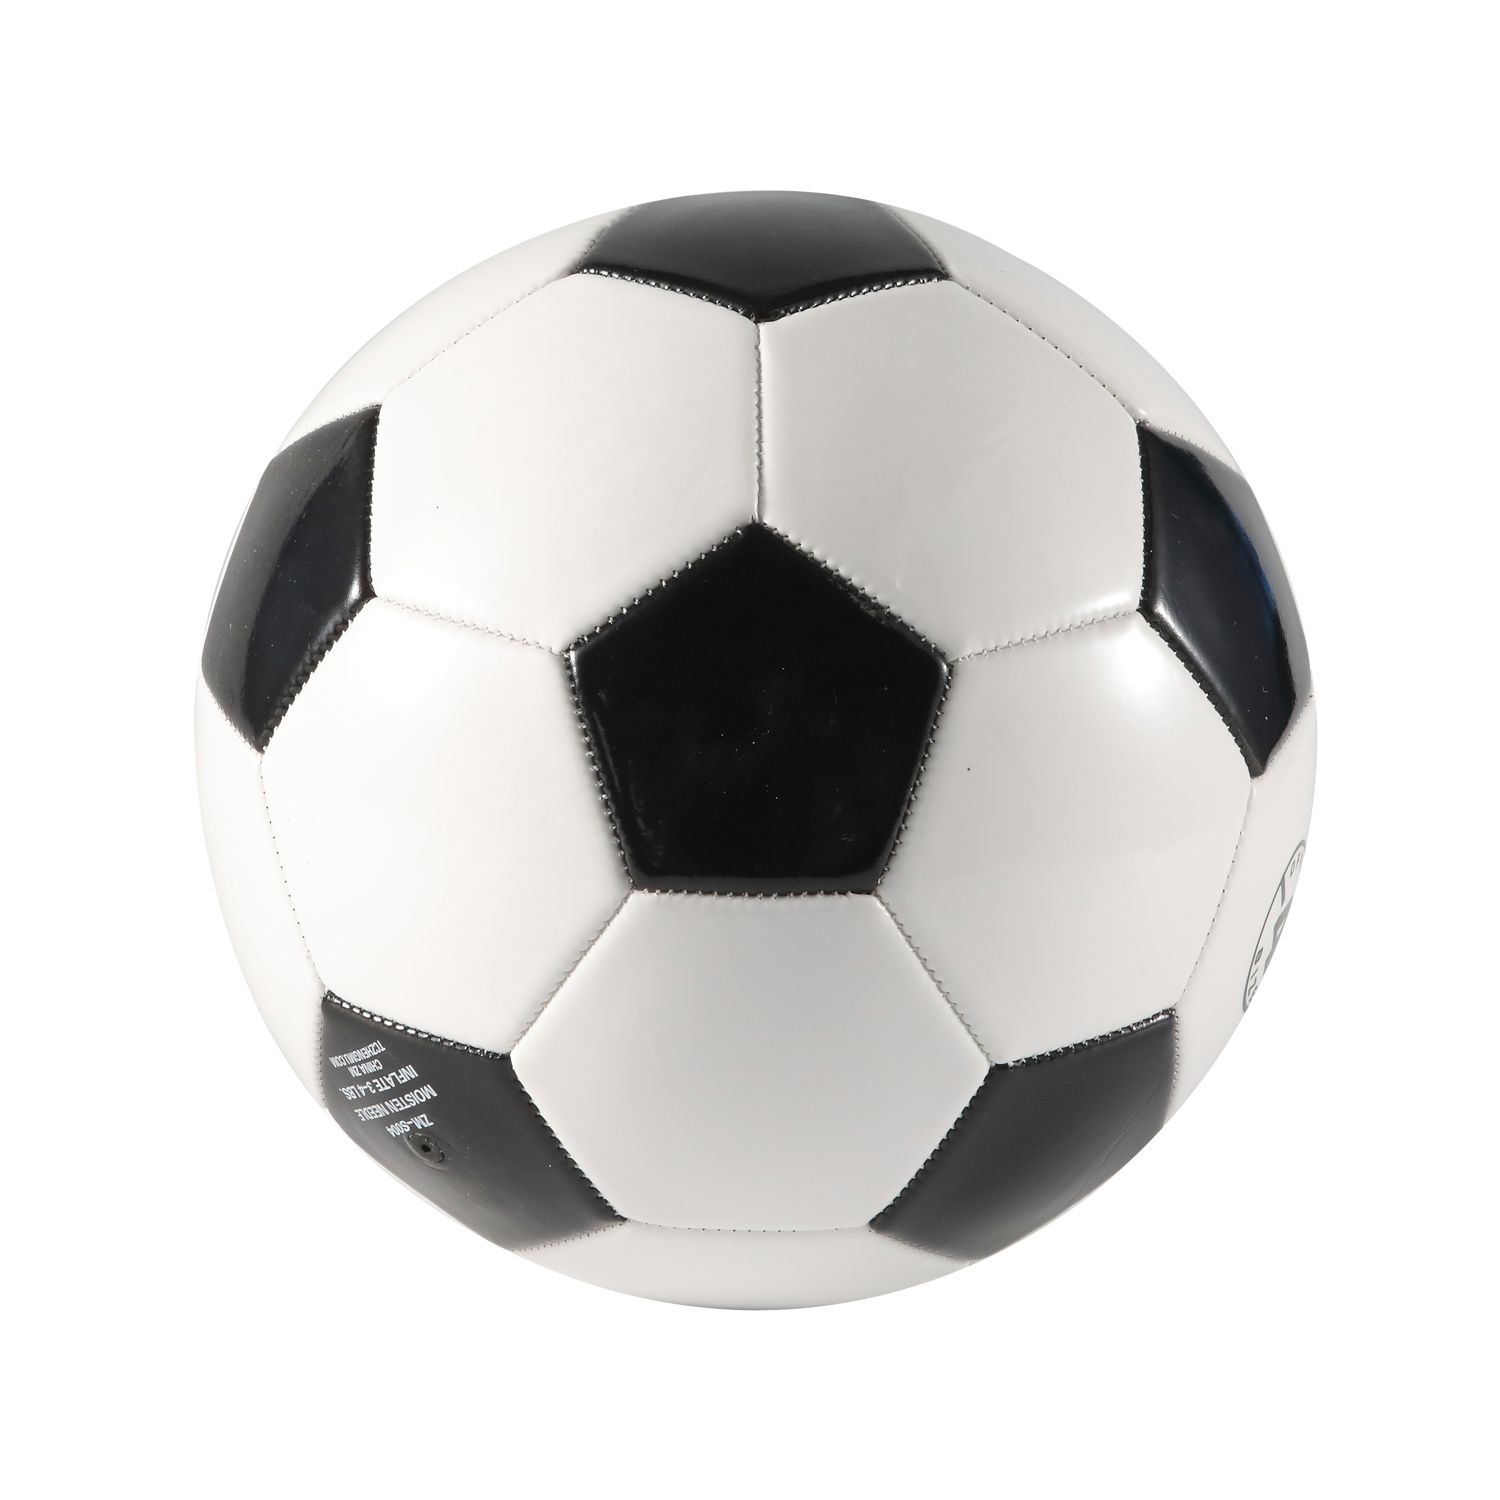 Maschinengenähter PVC-Fußball in offizieller Größe 5